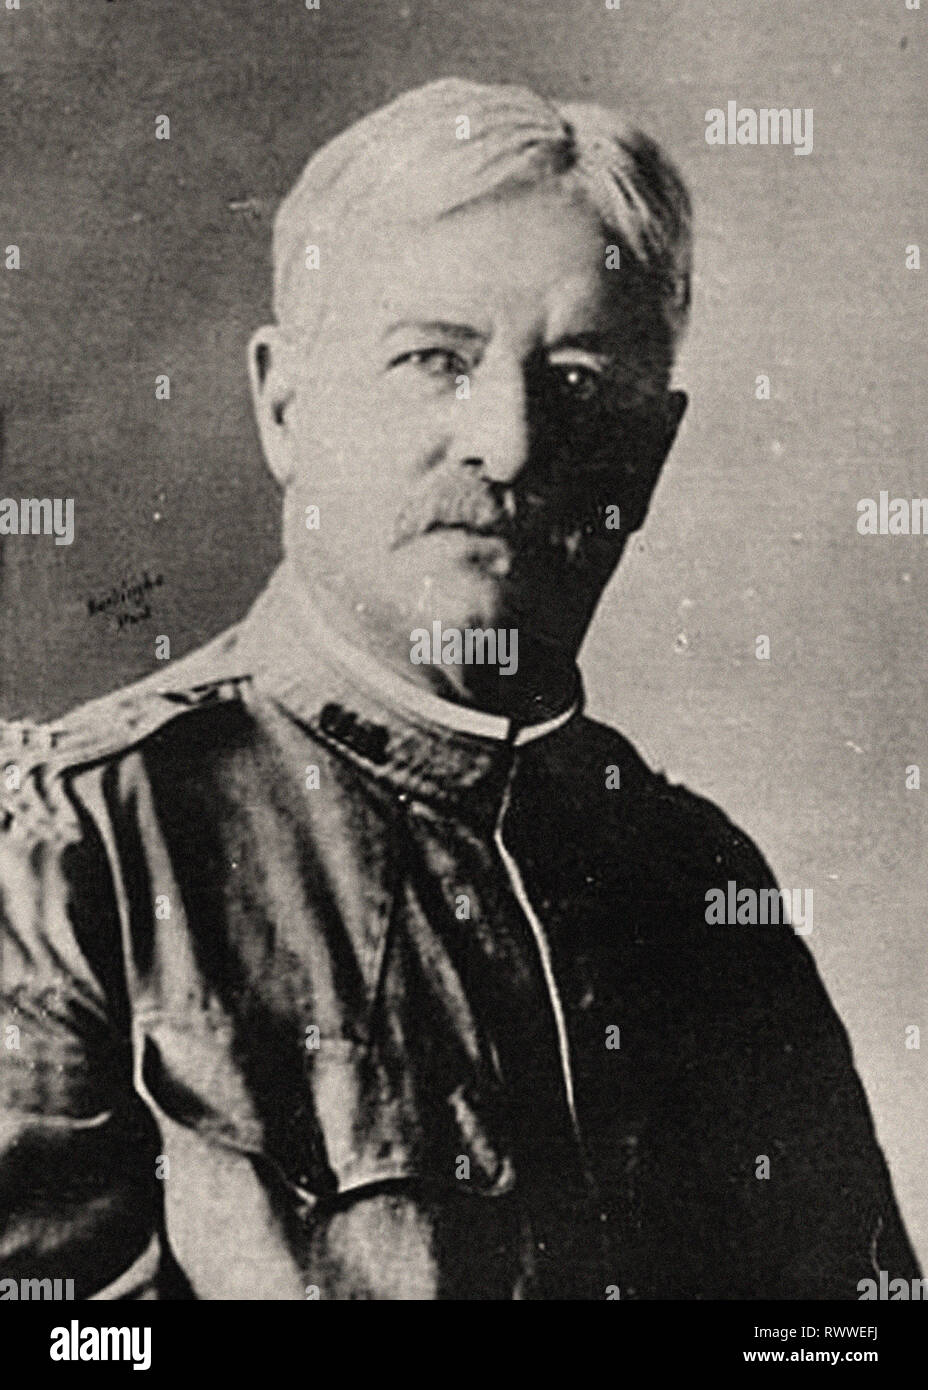 Photographic portrait of Général Plumer Stock Photo